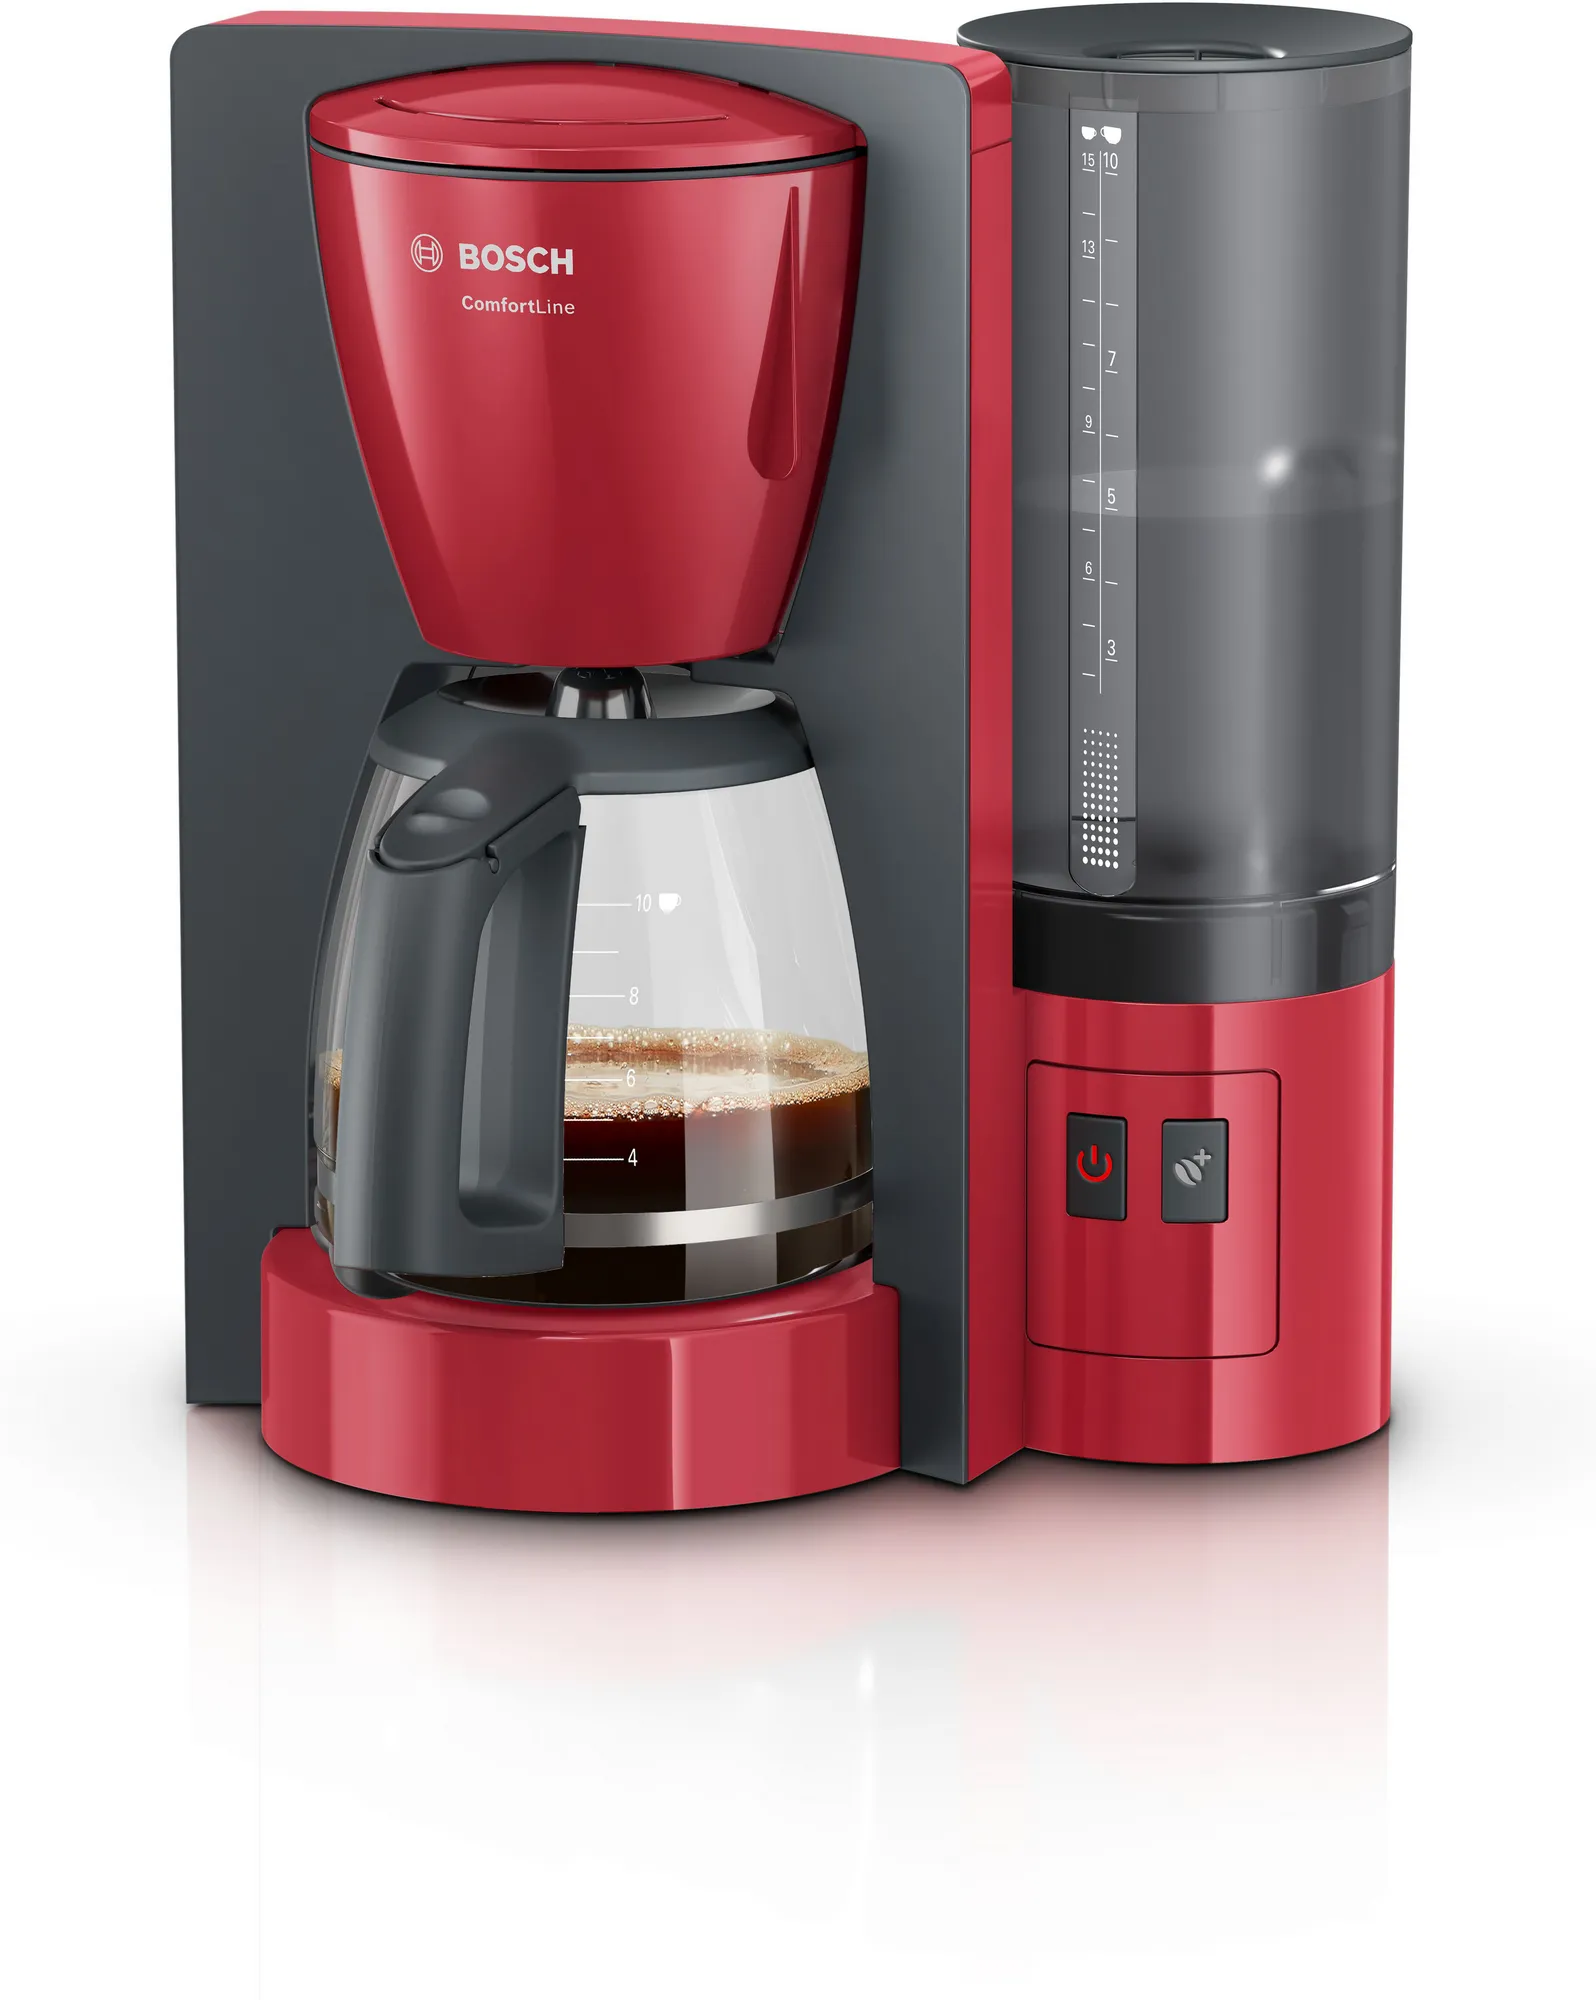 ماكينة تحضير القهوة كومفورت لاين، موديل TKA6A044، بلون احمر من بوش ضمان محلي 4 سنوات